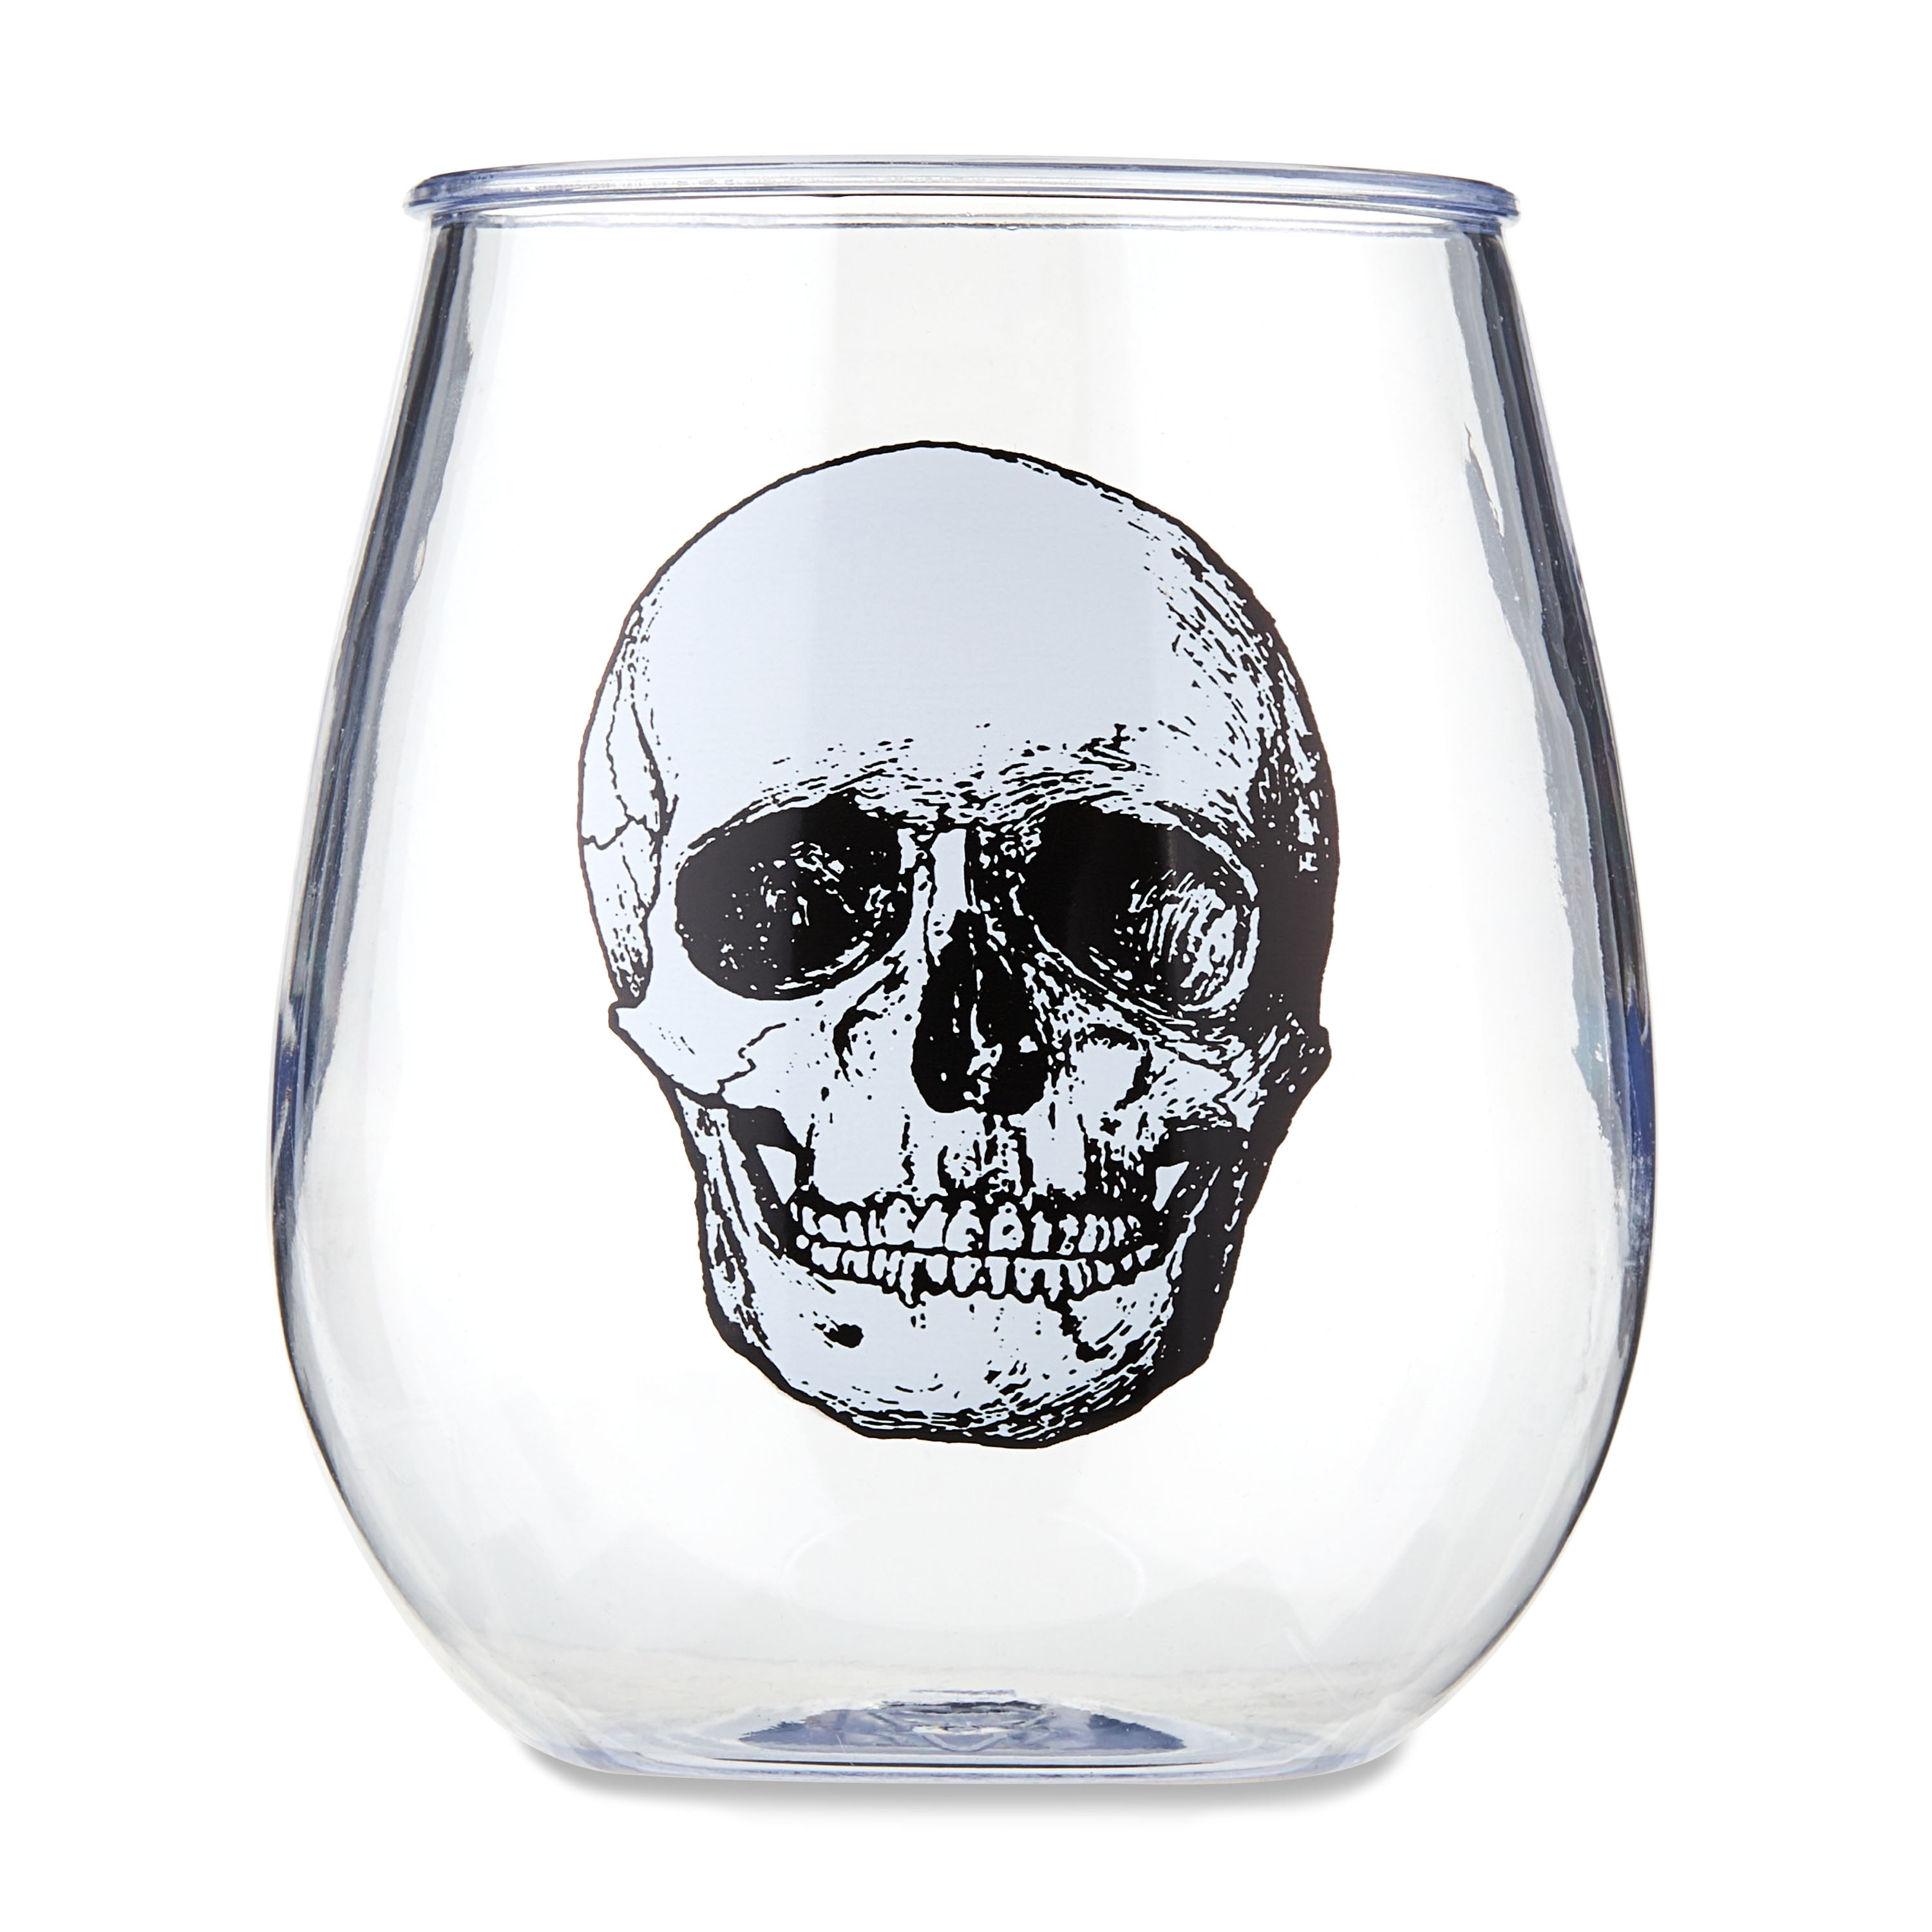 OAVQHLG3B Creative Skull Cup, Fun Entertainment Glassware, Wine